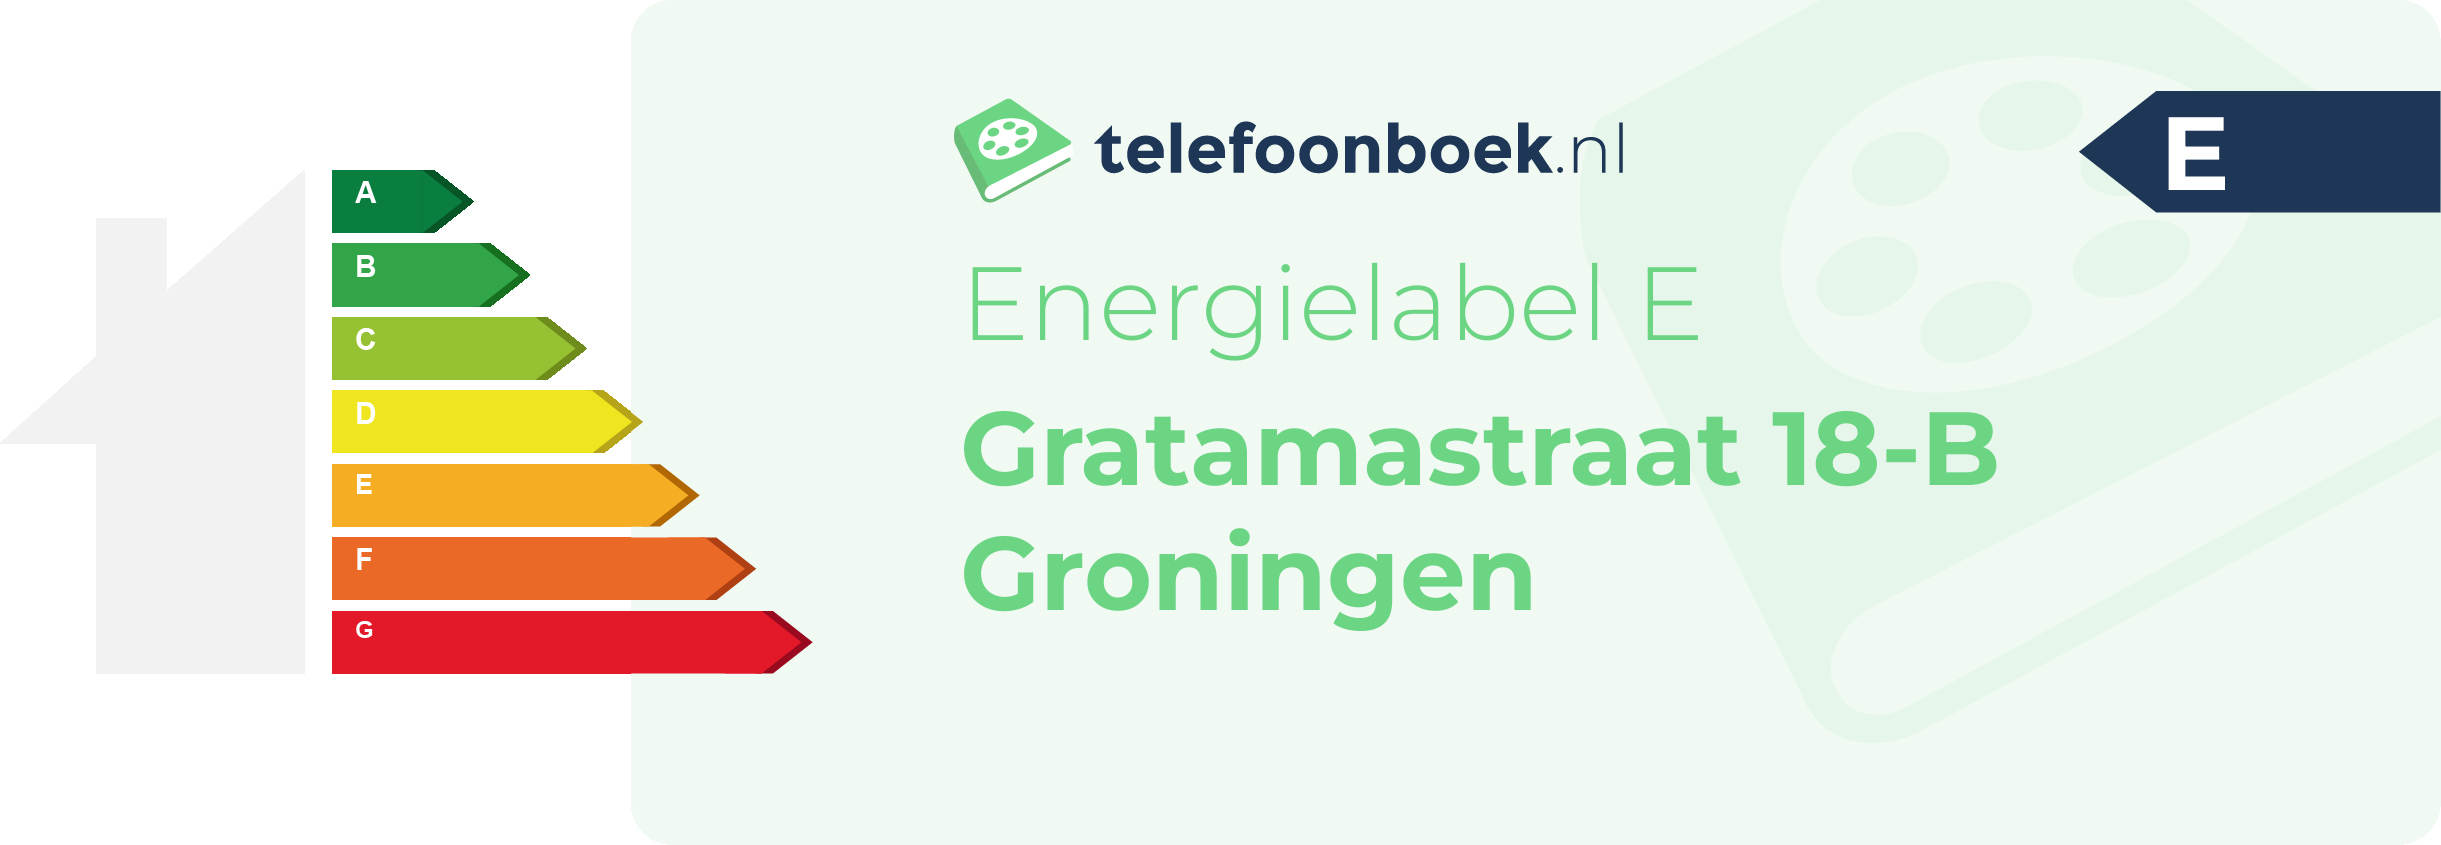 Energielabel Gratamastraat 18-B Groningen